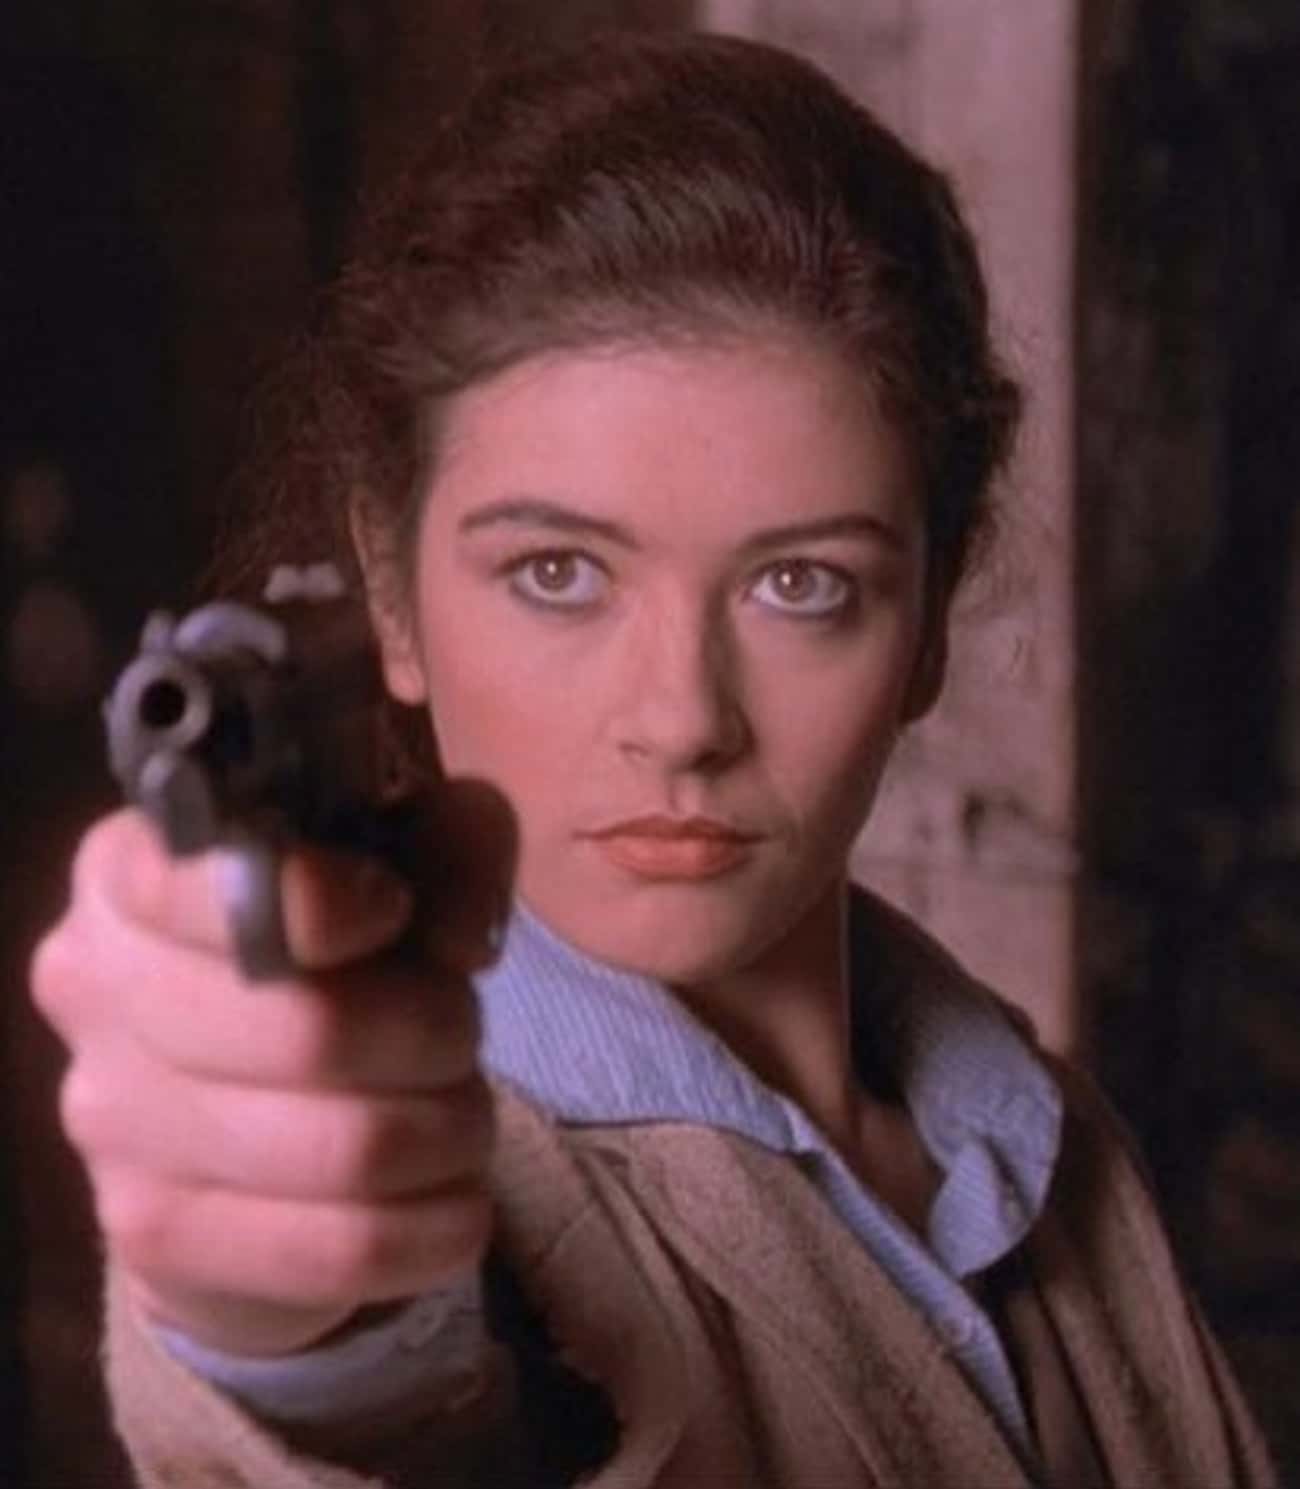 Young Catherine Zeta-Jones in Beige Jacket and Blue Buttondown